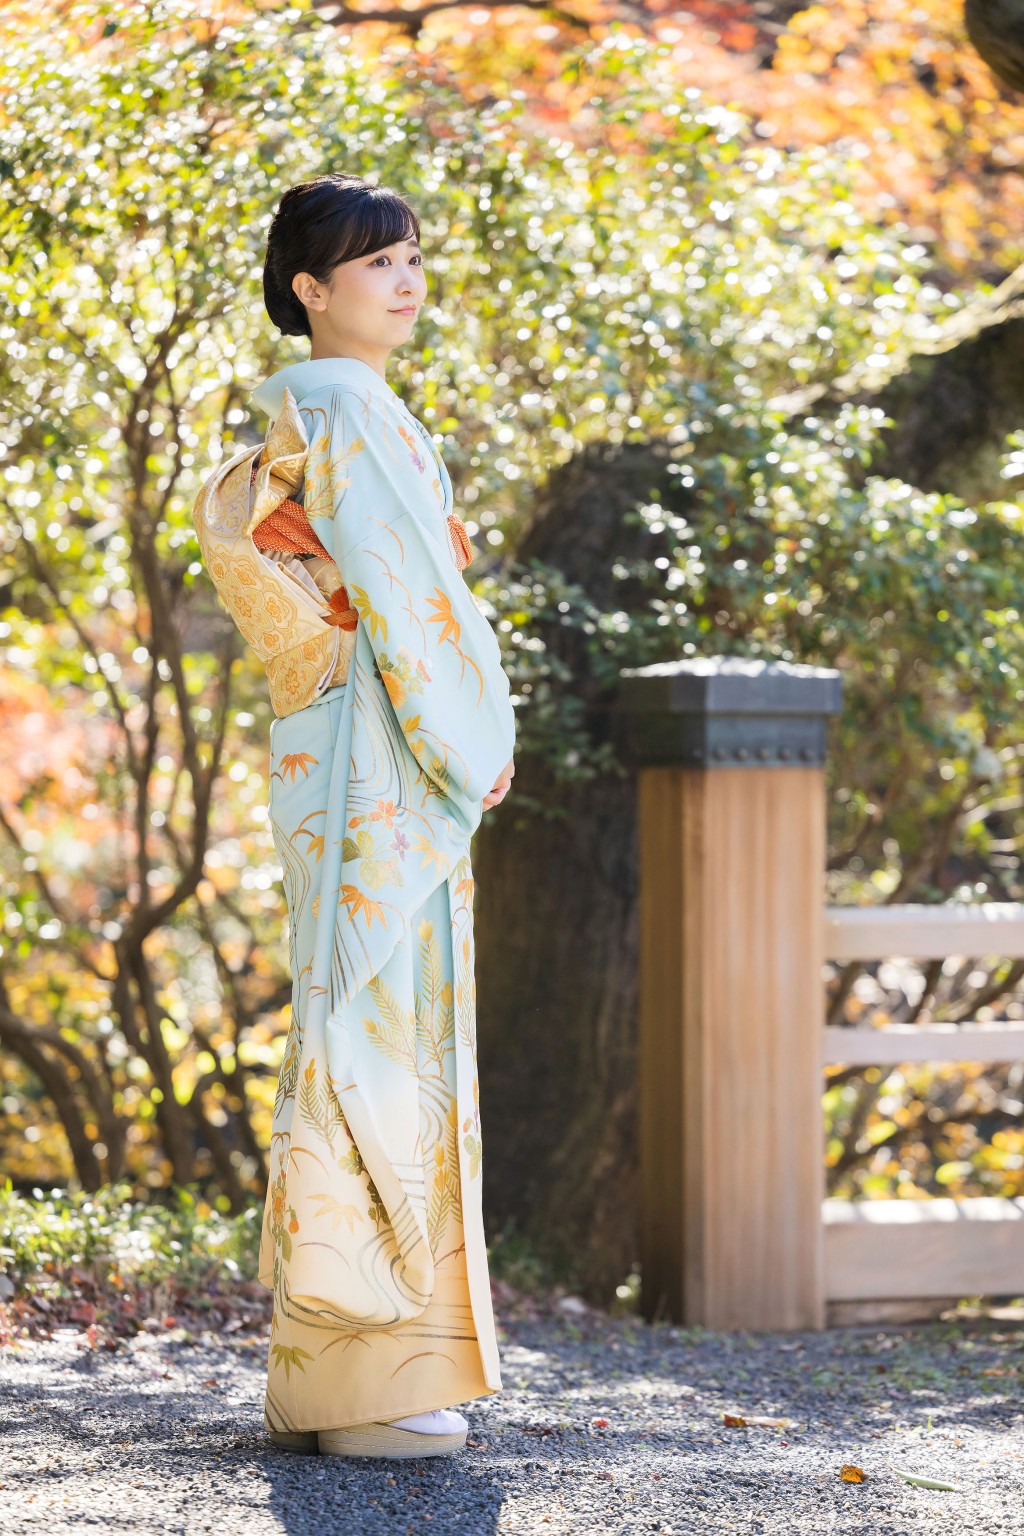 佳子公主穿和服拍攝29歲記念照片。 路透社